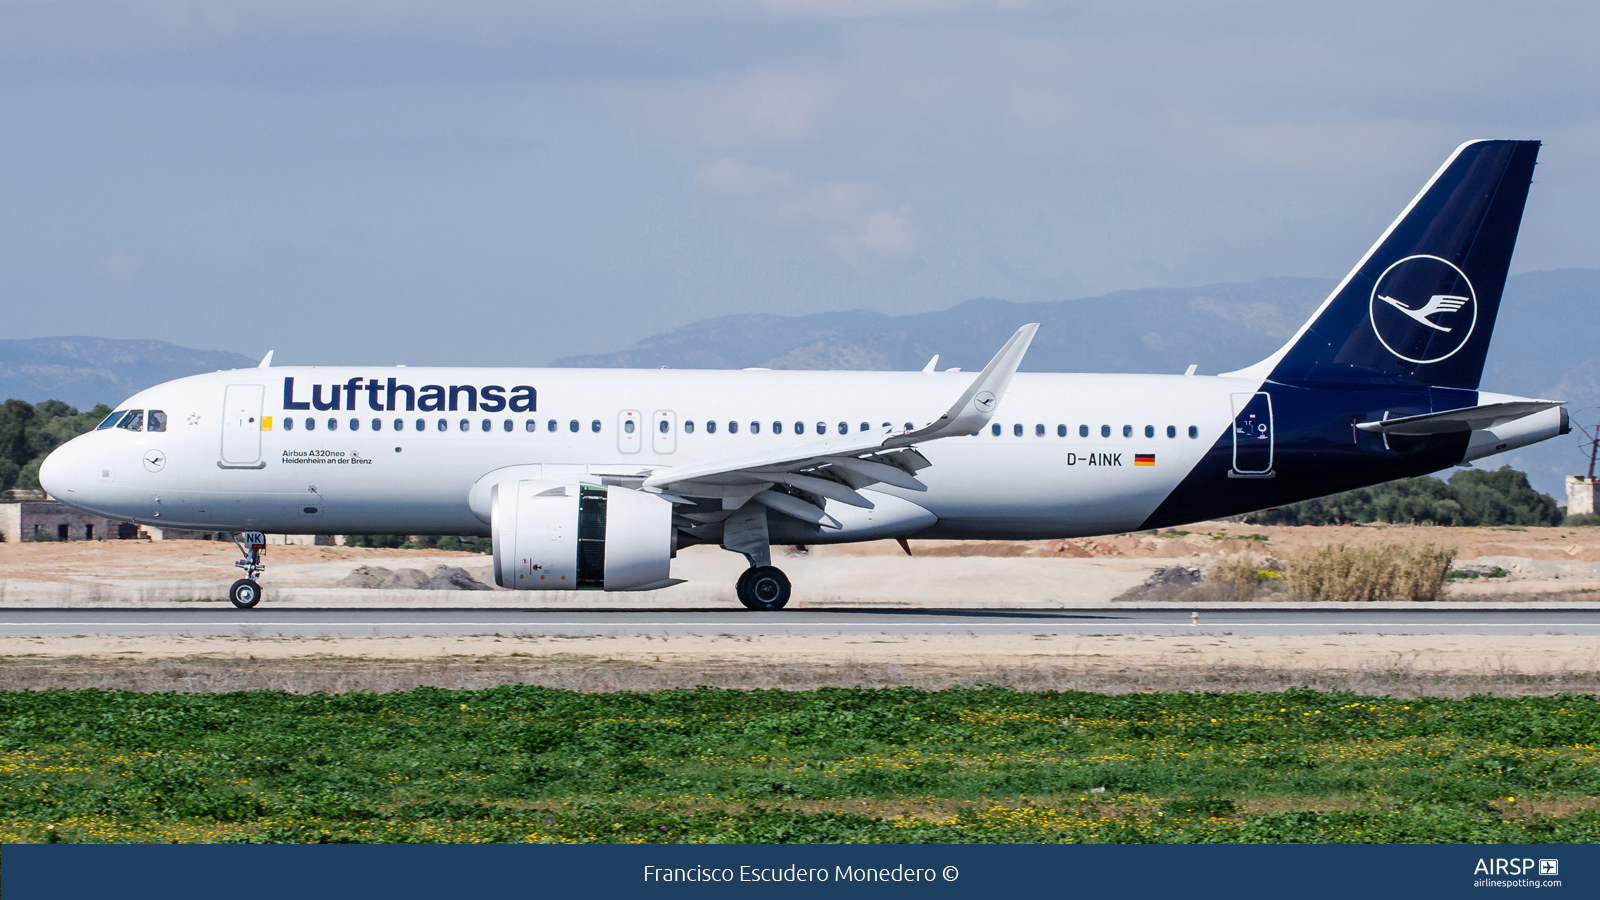 Lufthansa  Airbus A320neo  D-AINK